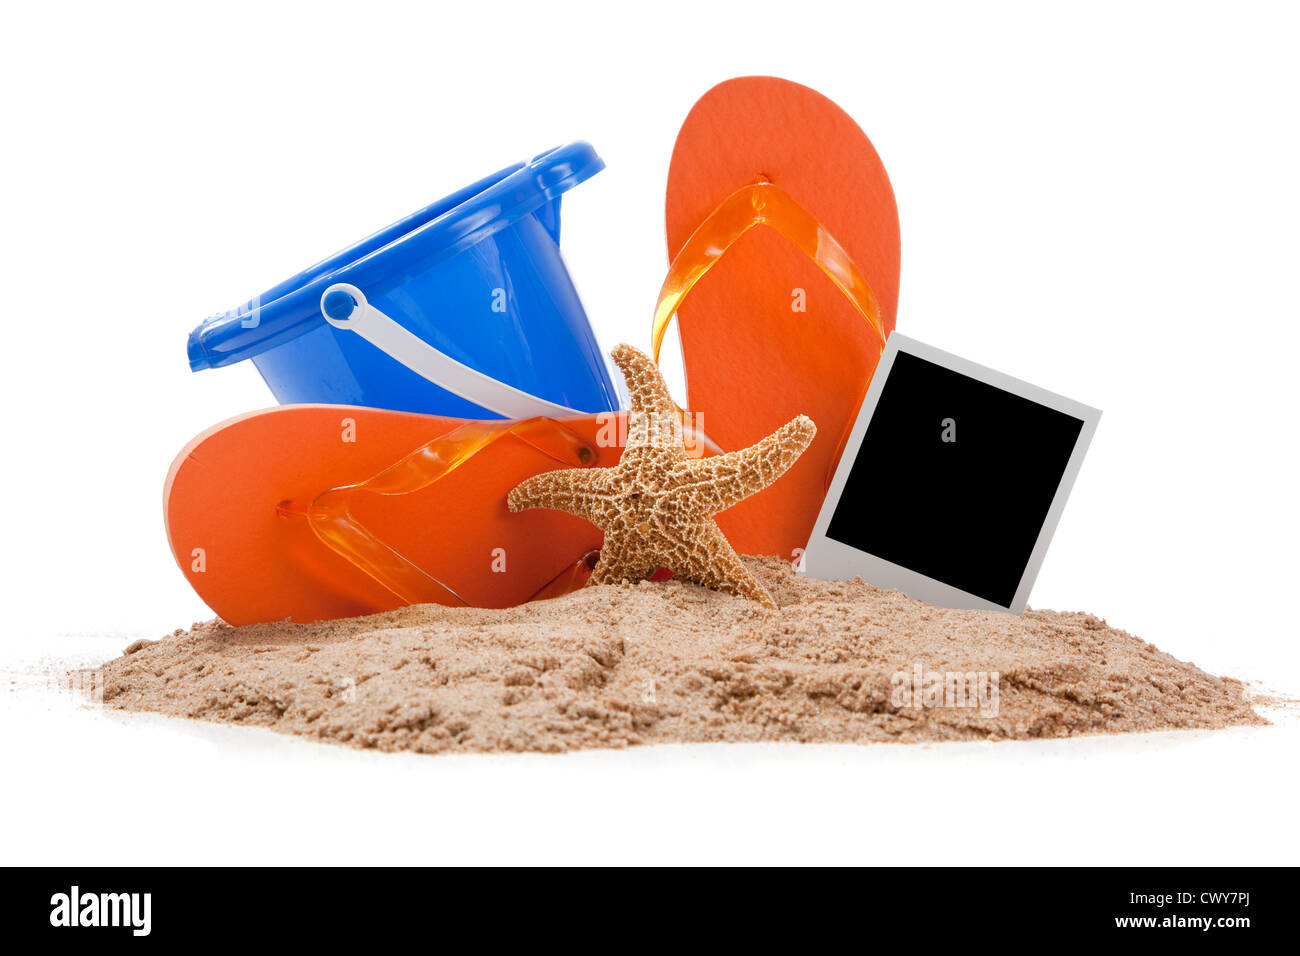 Une paire de tongs orange, bleu seau, étoiles et un polaroid sur le sable Banque D'Images